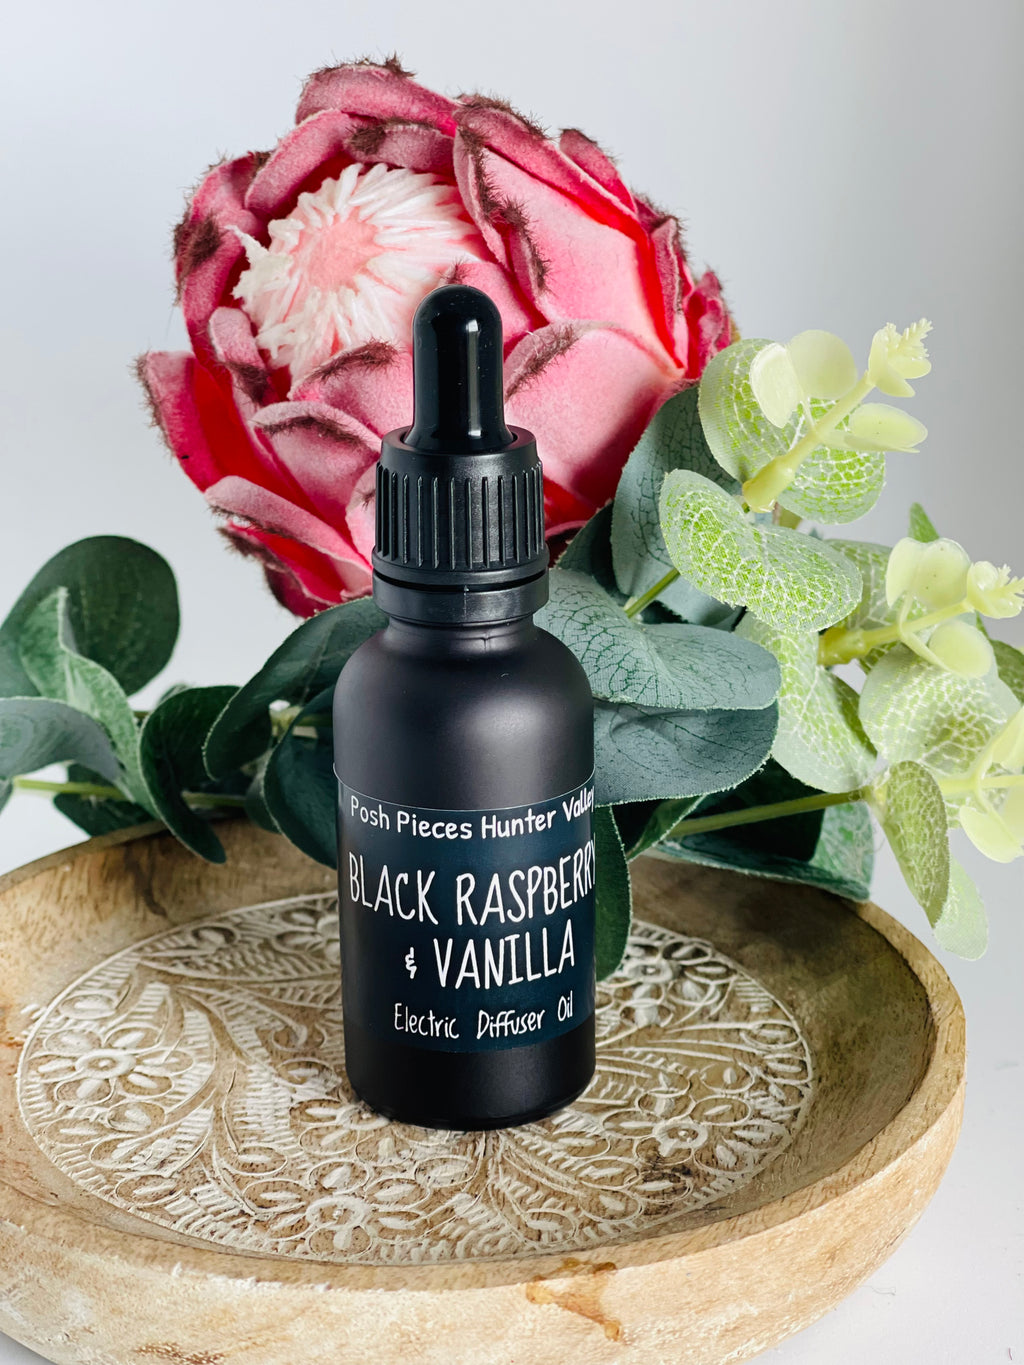 Black Raspberry & Vanilla electric diffuser oil